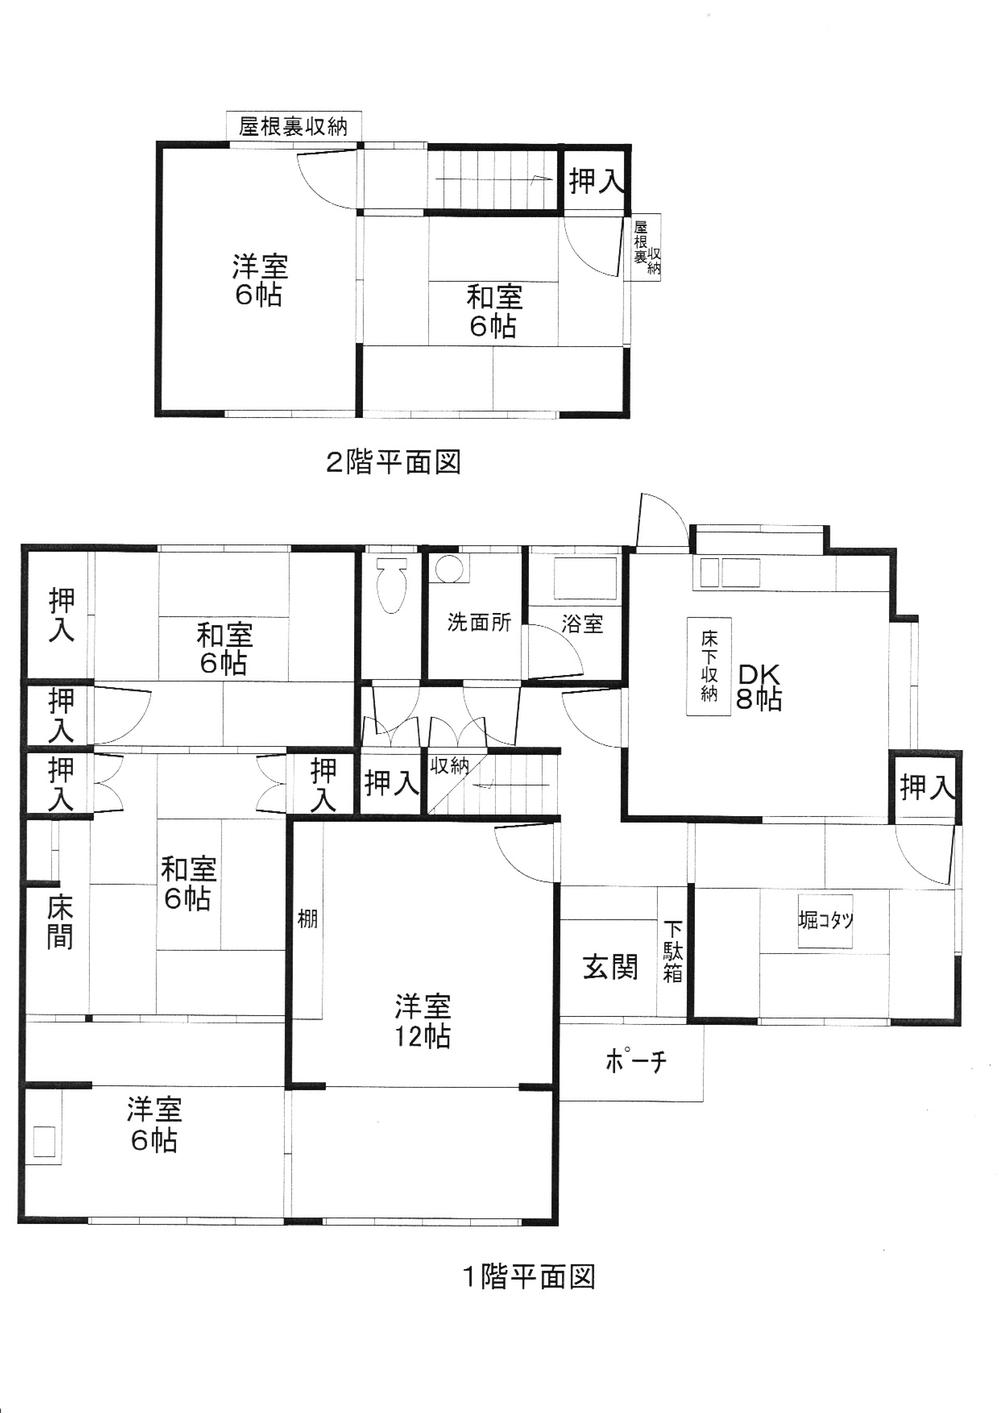 Floor plan. 14.8 million yen, 7DK, Land area 448.52 sq m , Building area 134.33 sq m 7DK